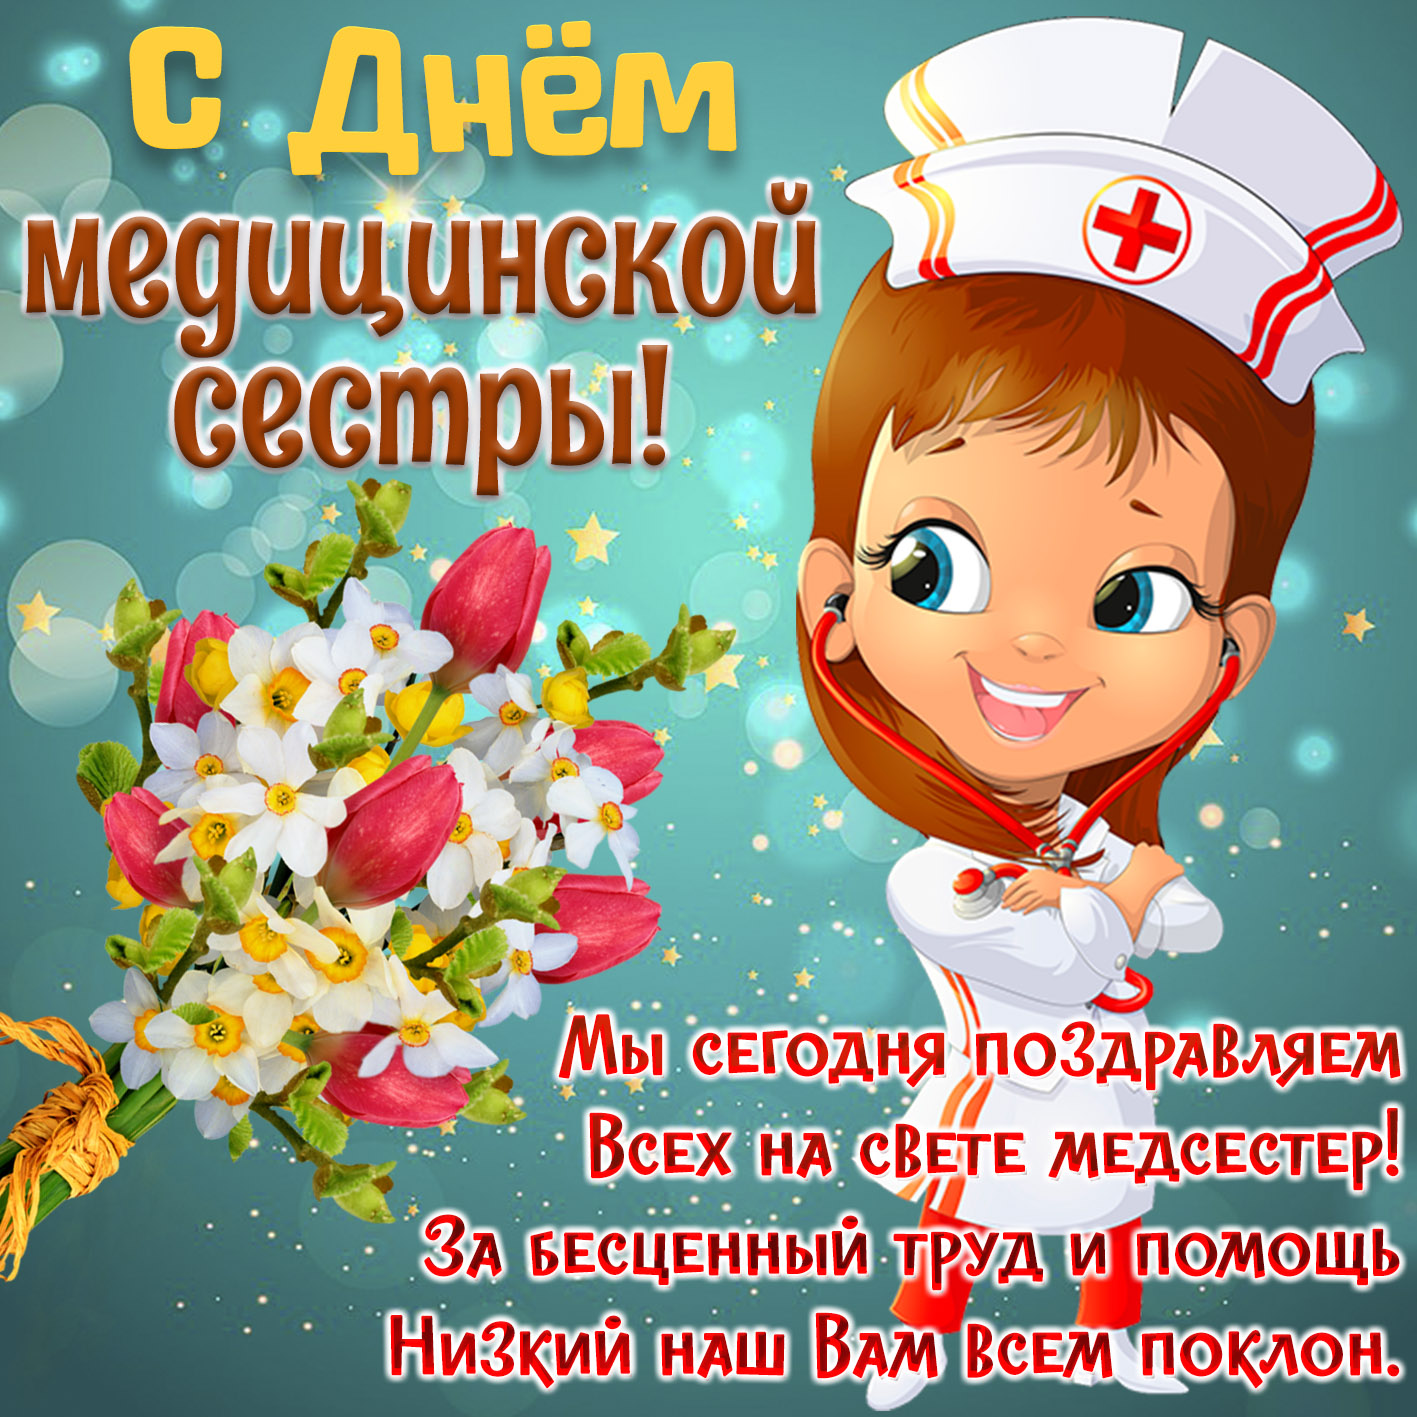 С Днем Рождения Медсестре Красивые Поздравления